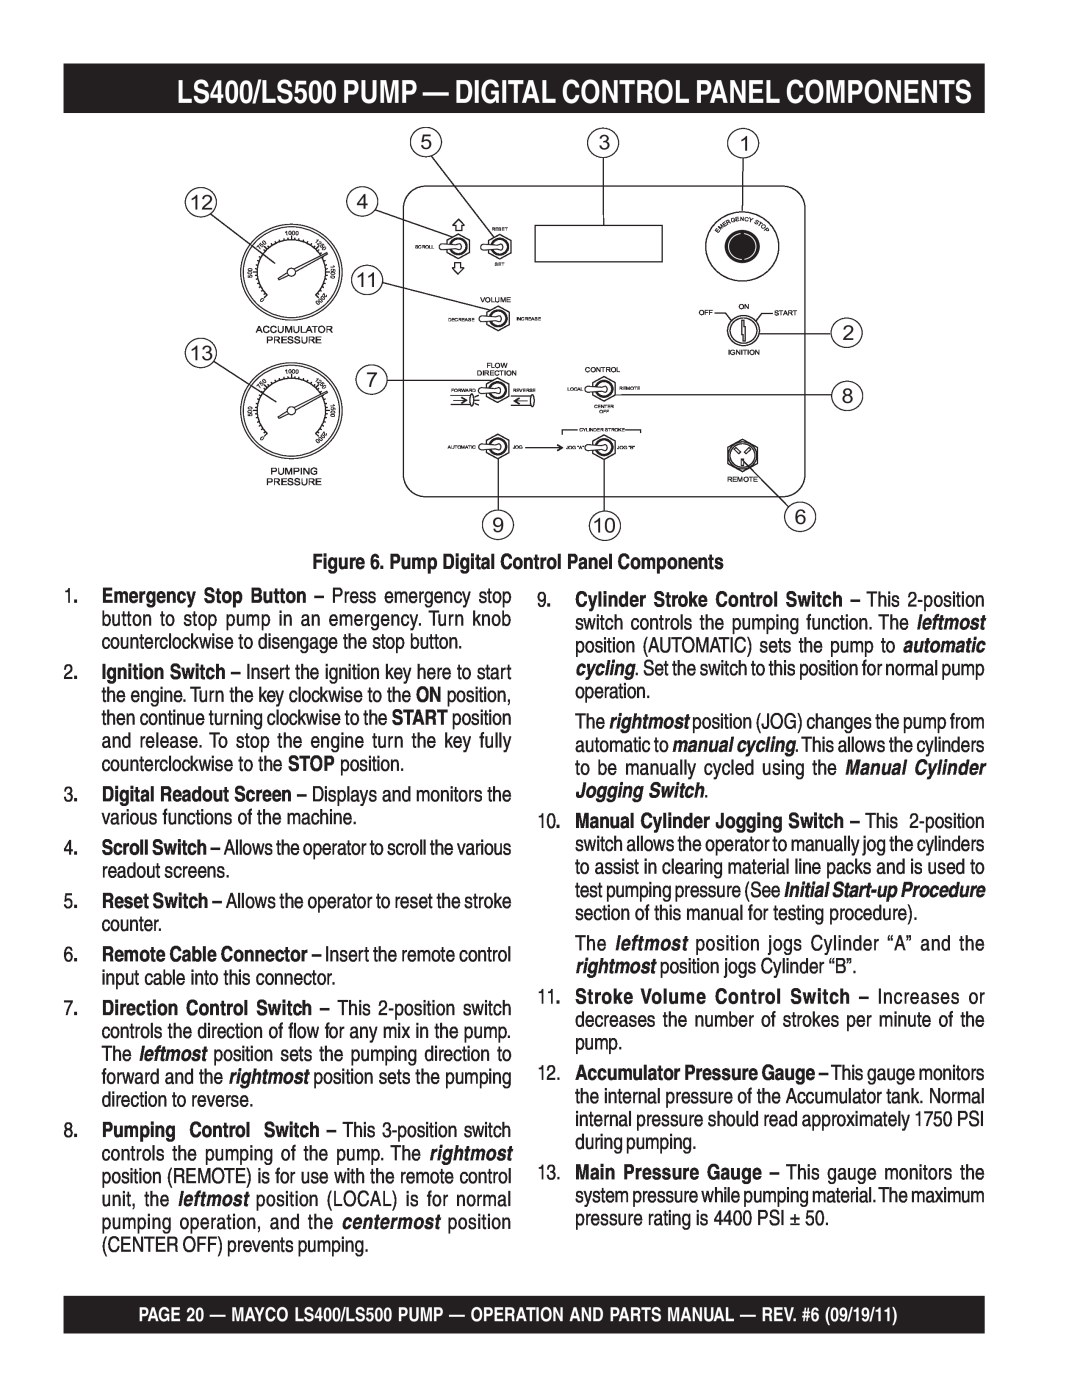 Multiquip manual LS400/LS500 PUMP - DIGITAL CONTROL PANEL COMPONENTS, Pump Digital Control Panel Components 